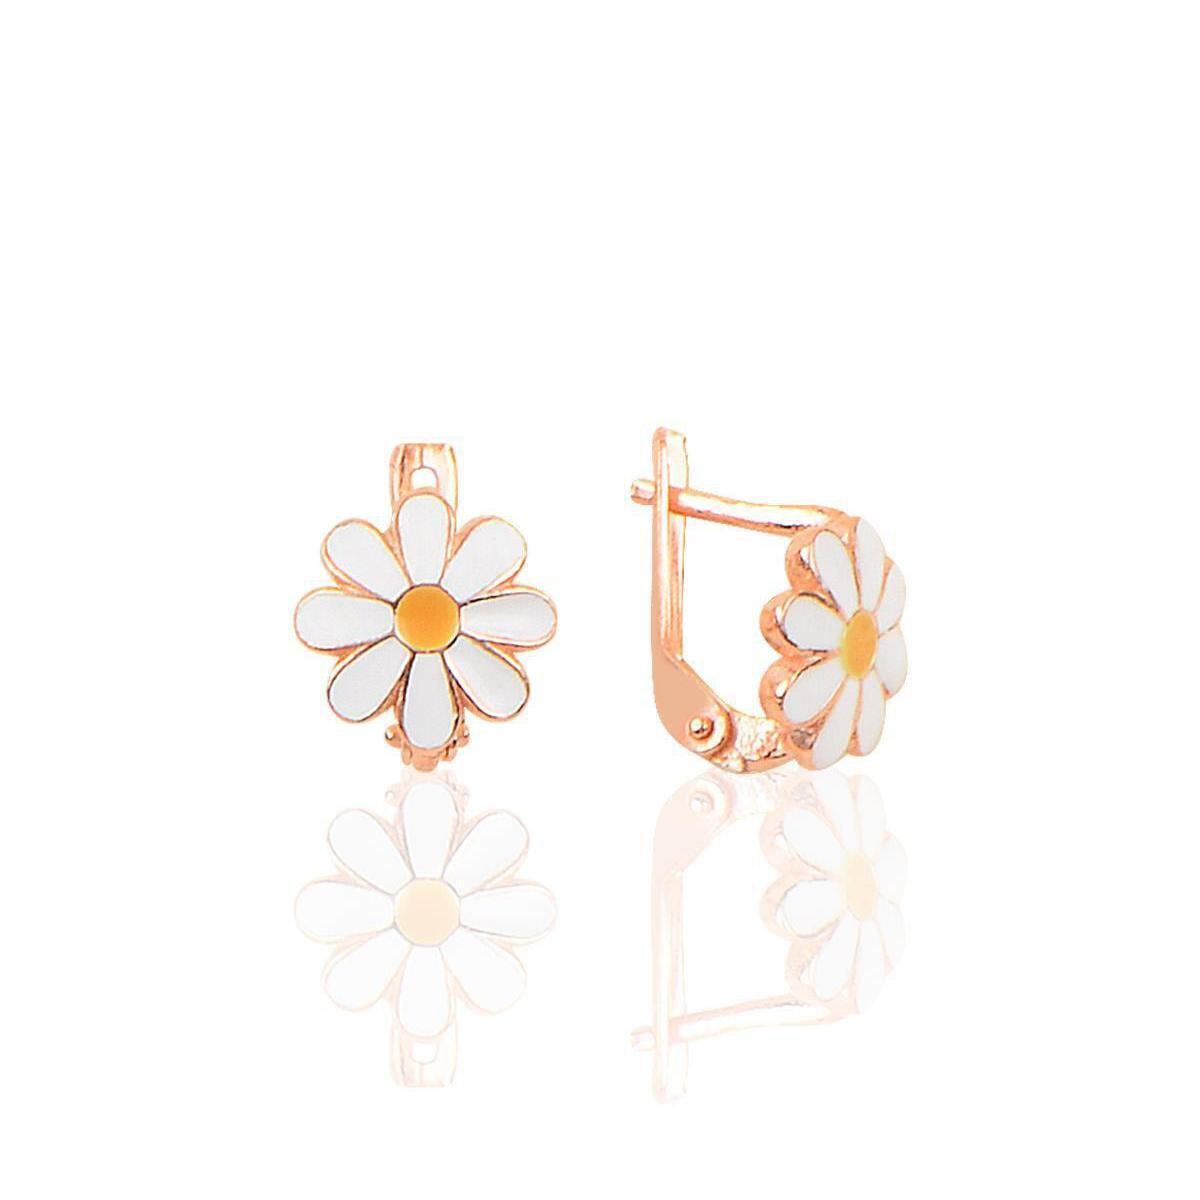 Daisy Gold Earrings • Daisy London Earrings • Daisy Stud Earrings - Trending Silver Gifts